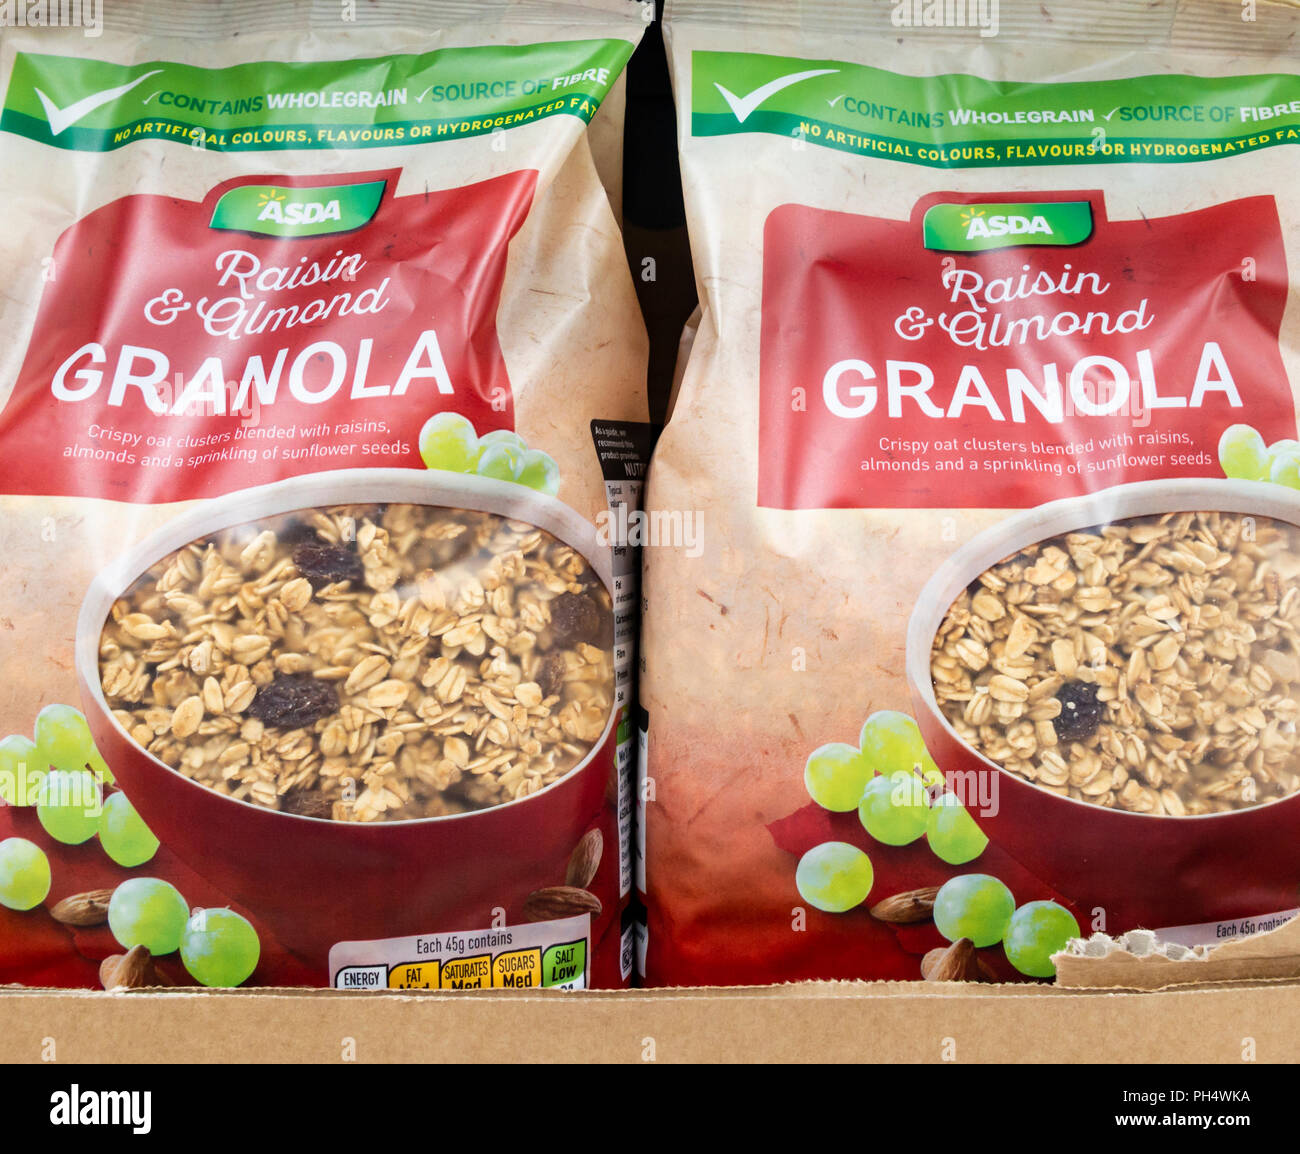 Asda propria marca Granola di cereali per la prima colazione nel supermercato Asda. Regno Unito Foto Stock